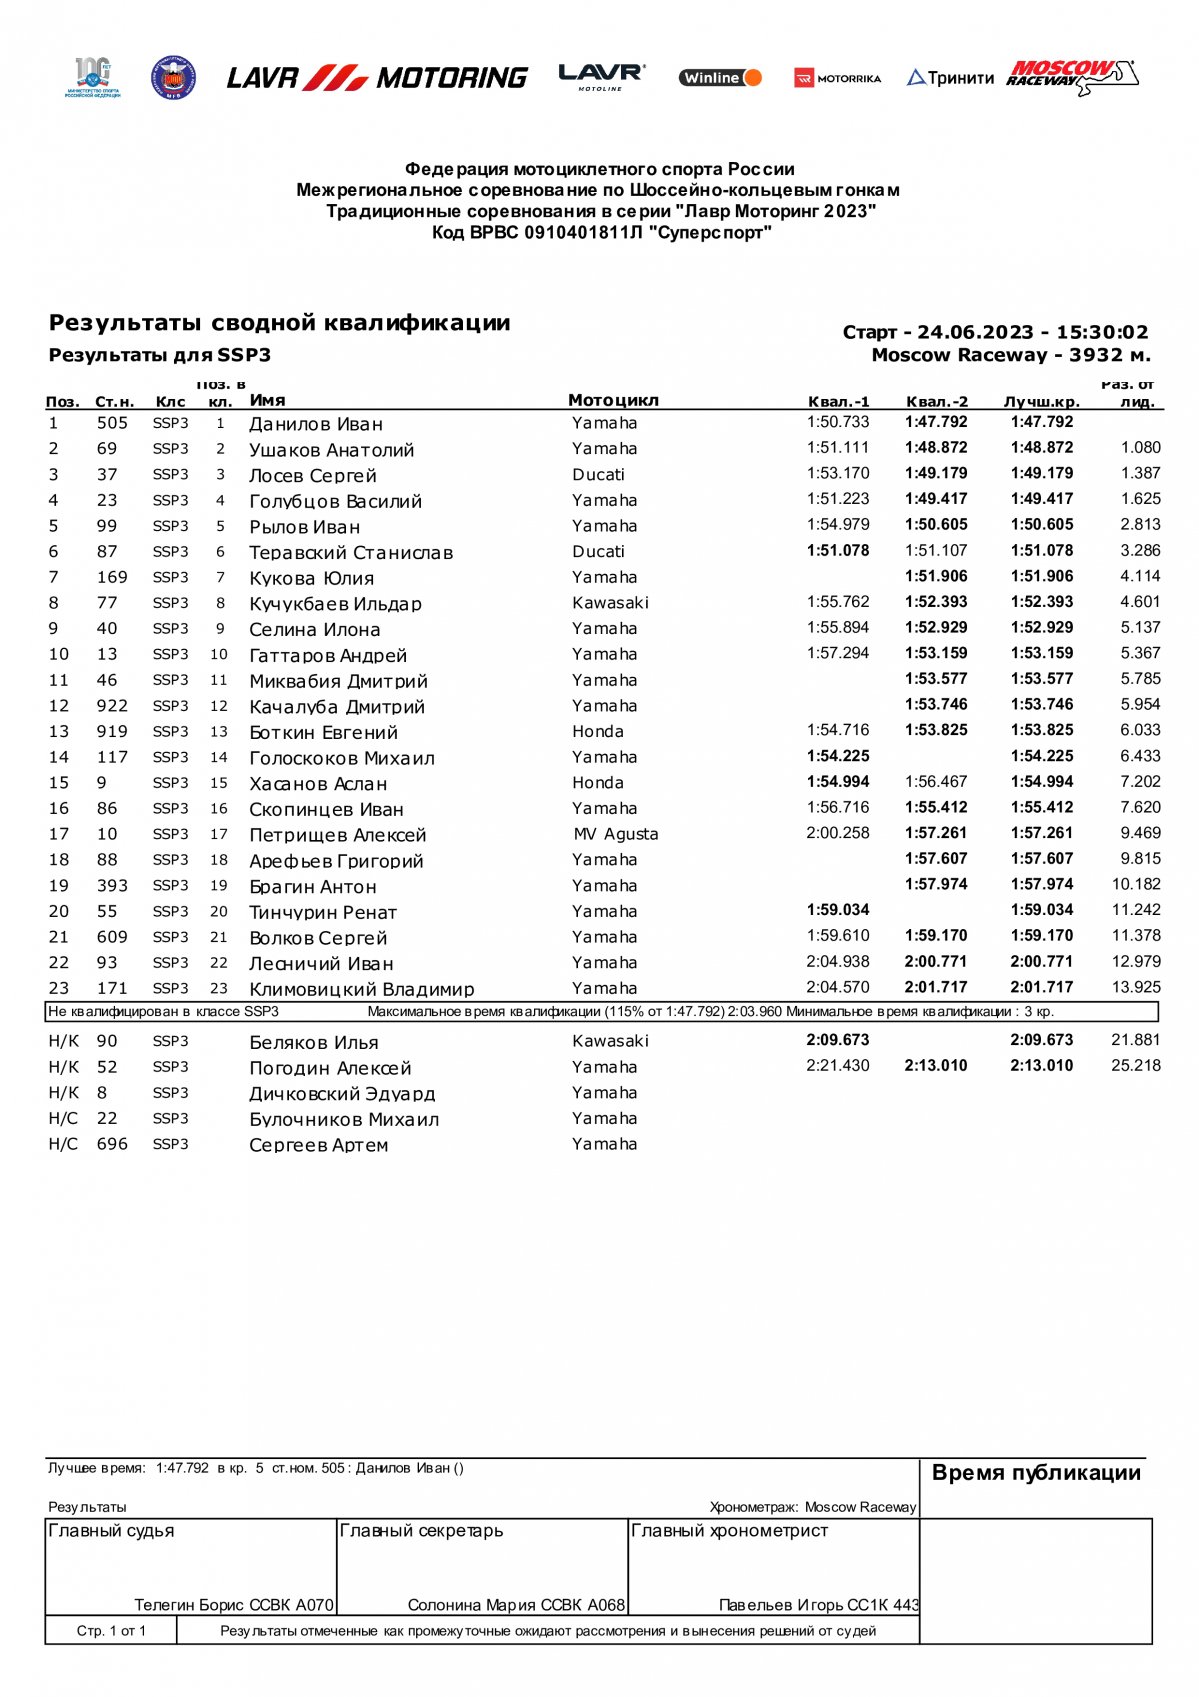 Результаты квалификации SSP3, Moscow Raceway, 2 этап